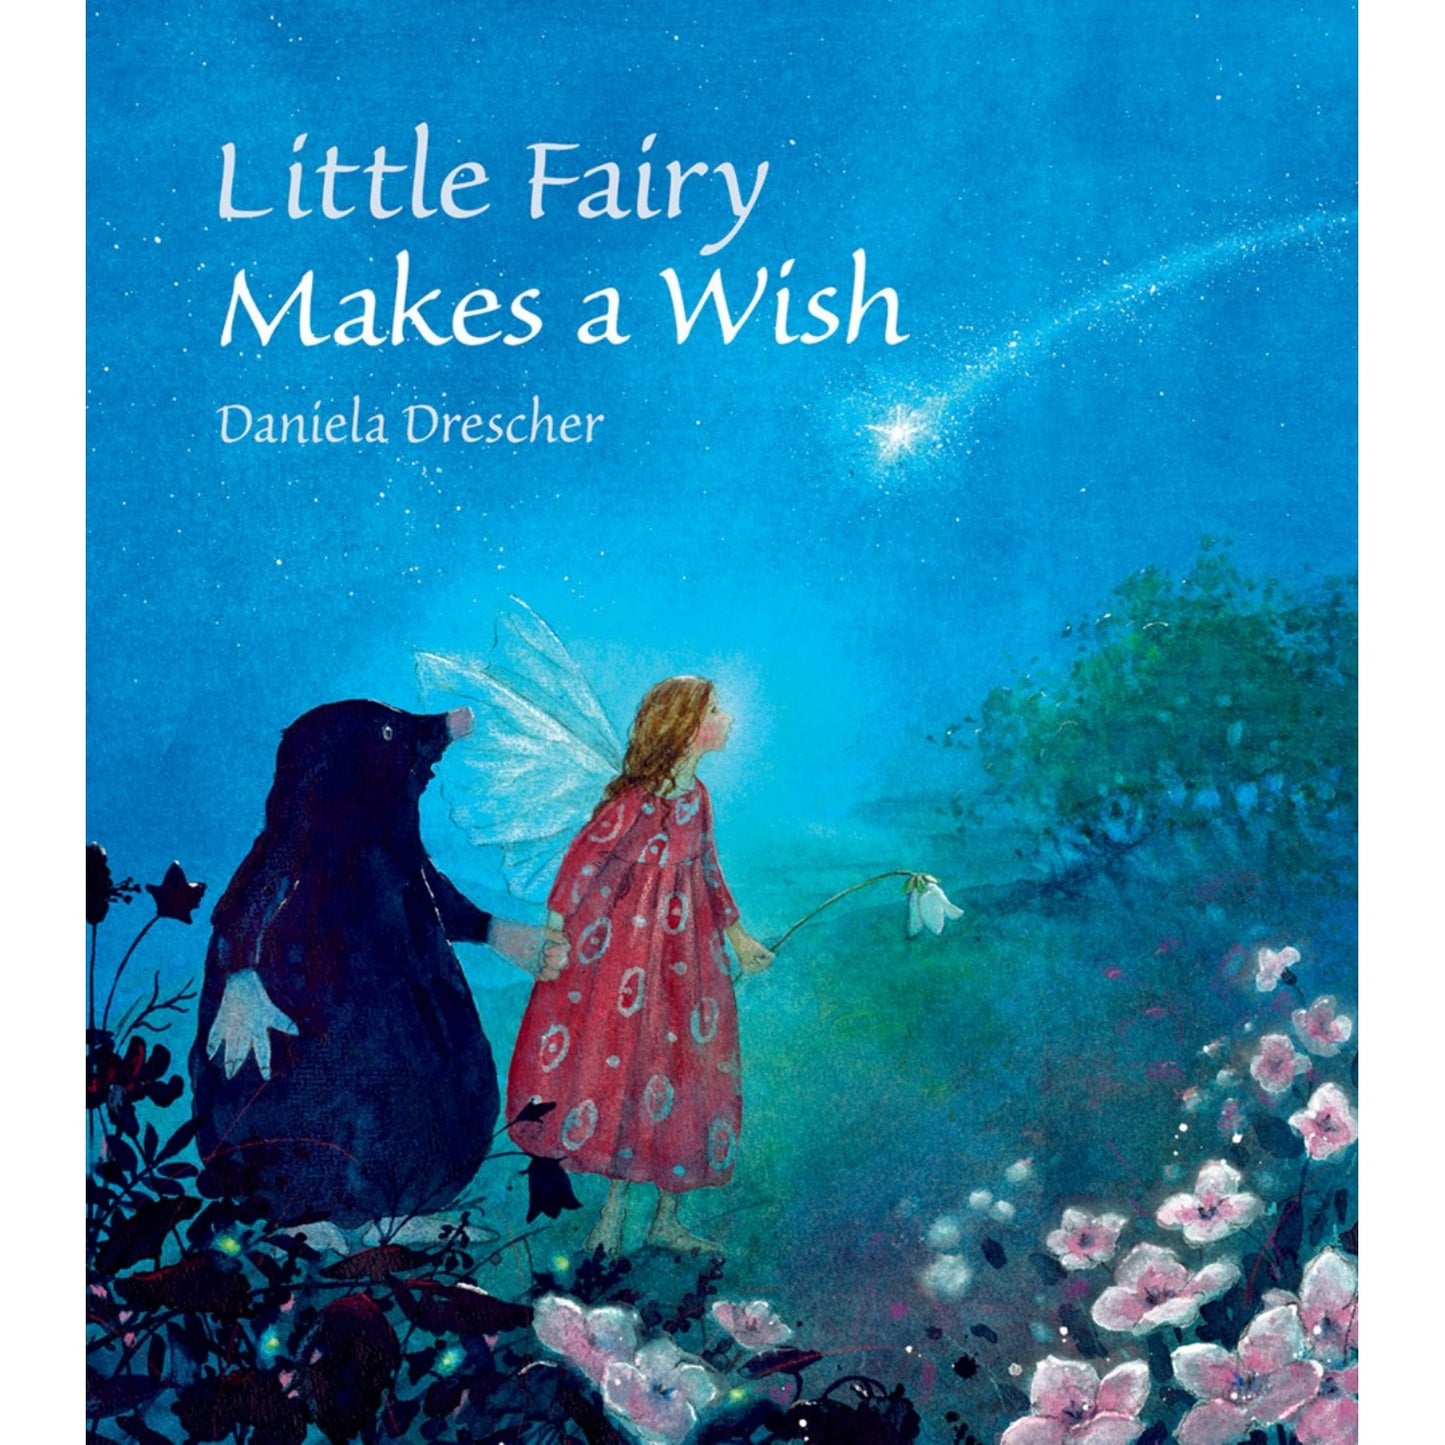 Little Fairy Makes a Wish | Daniela Drescher | Hardcover | Tales & Myths for Children